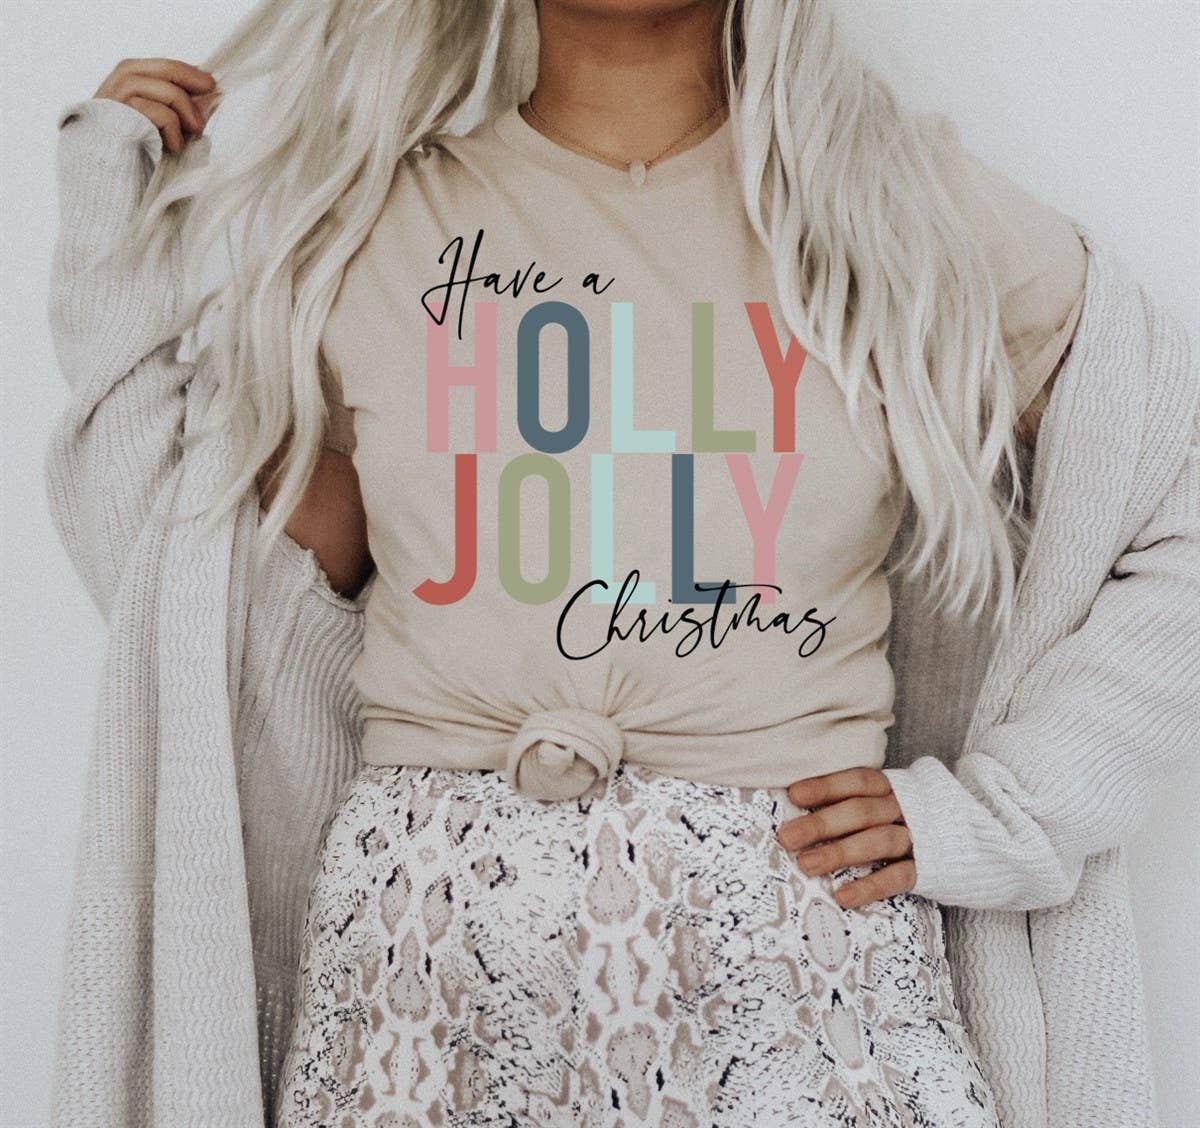 Holly Jolly Christmas Tee as